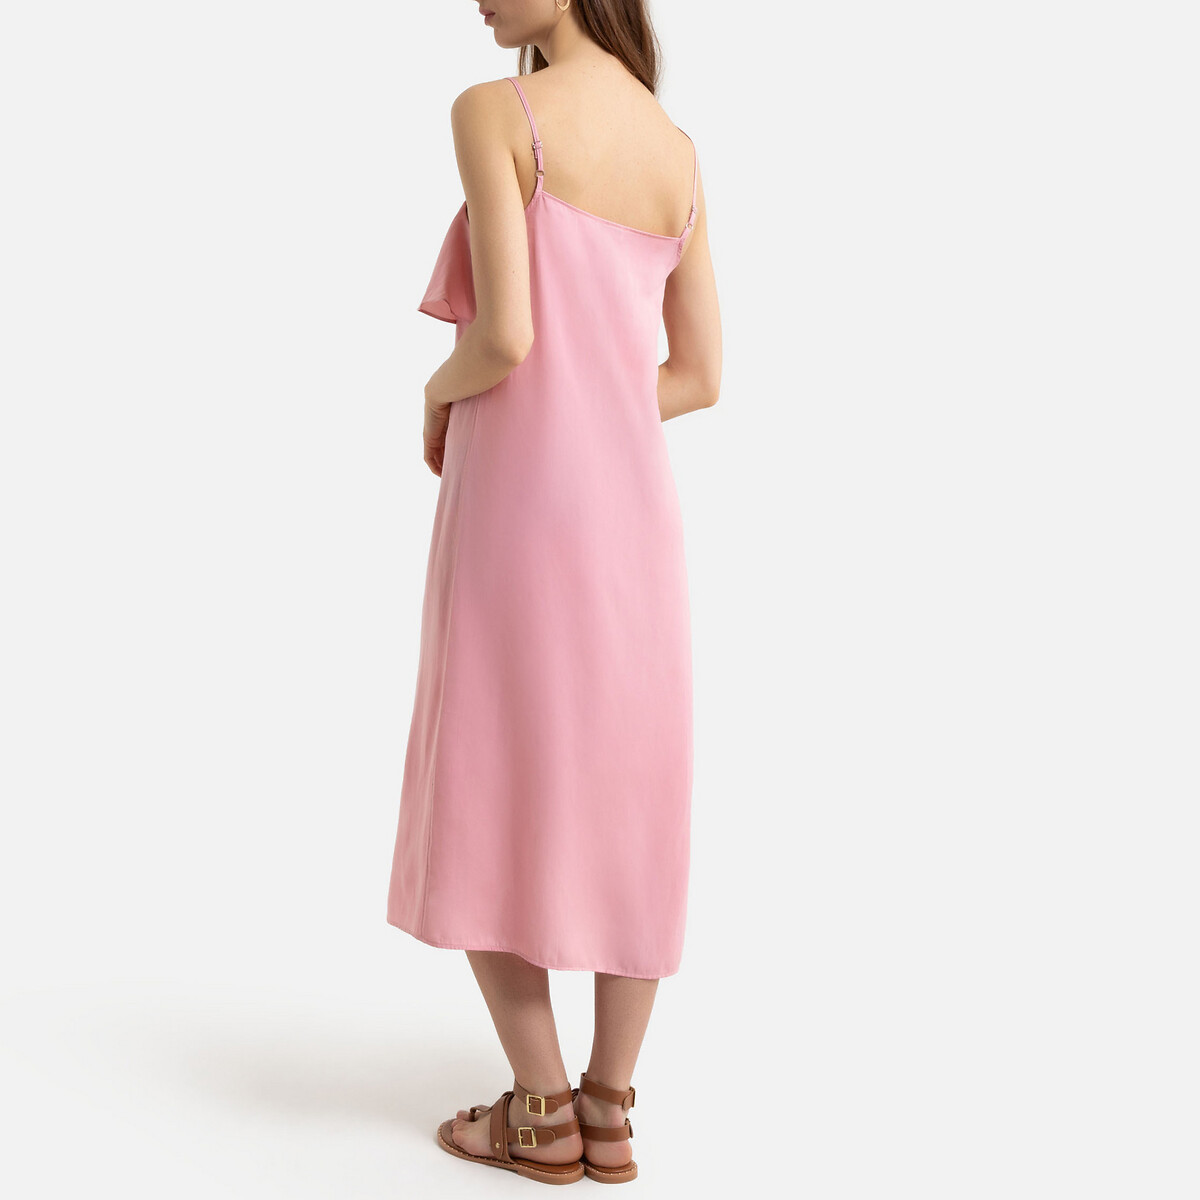 Платье La Redoute Длинное на тонких бретелях с воланом 42 (FR) - 48 (RUS) розовый, размер 42 (FR) - 48 (RUS) Длинное на тонких бретелях с воланом 42 (FR) - 48 (RUS) розовый - фото 3